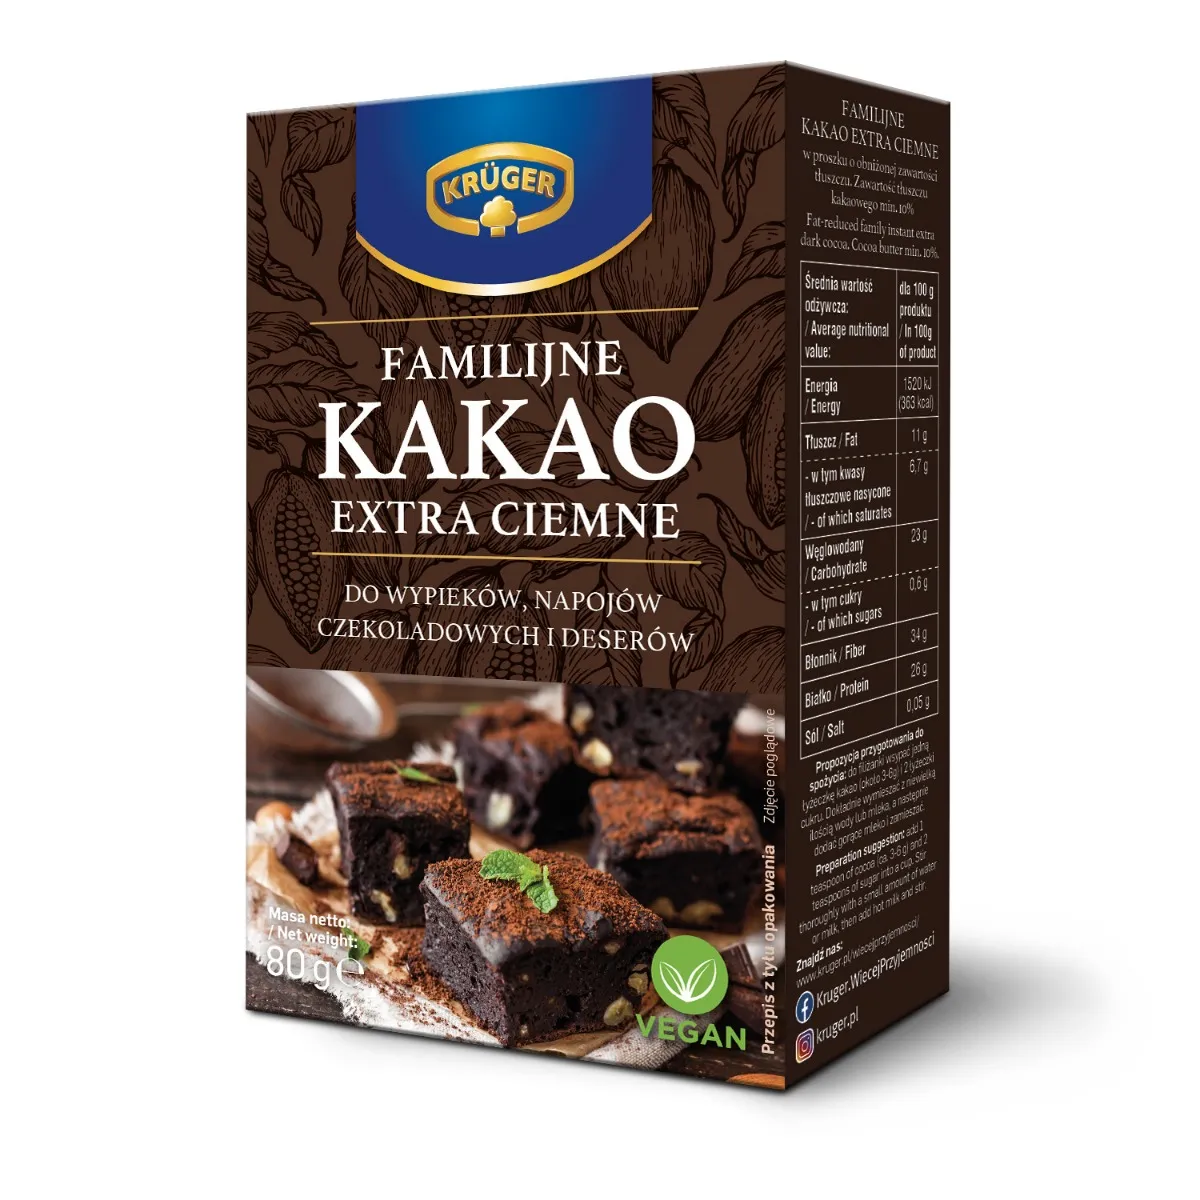 Krüger kakao familijne extra o obniżonej zawartości tłuszczu, 80 g